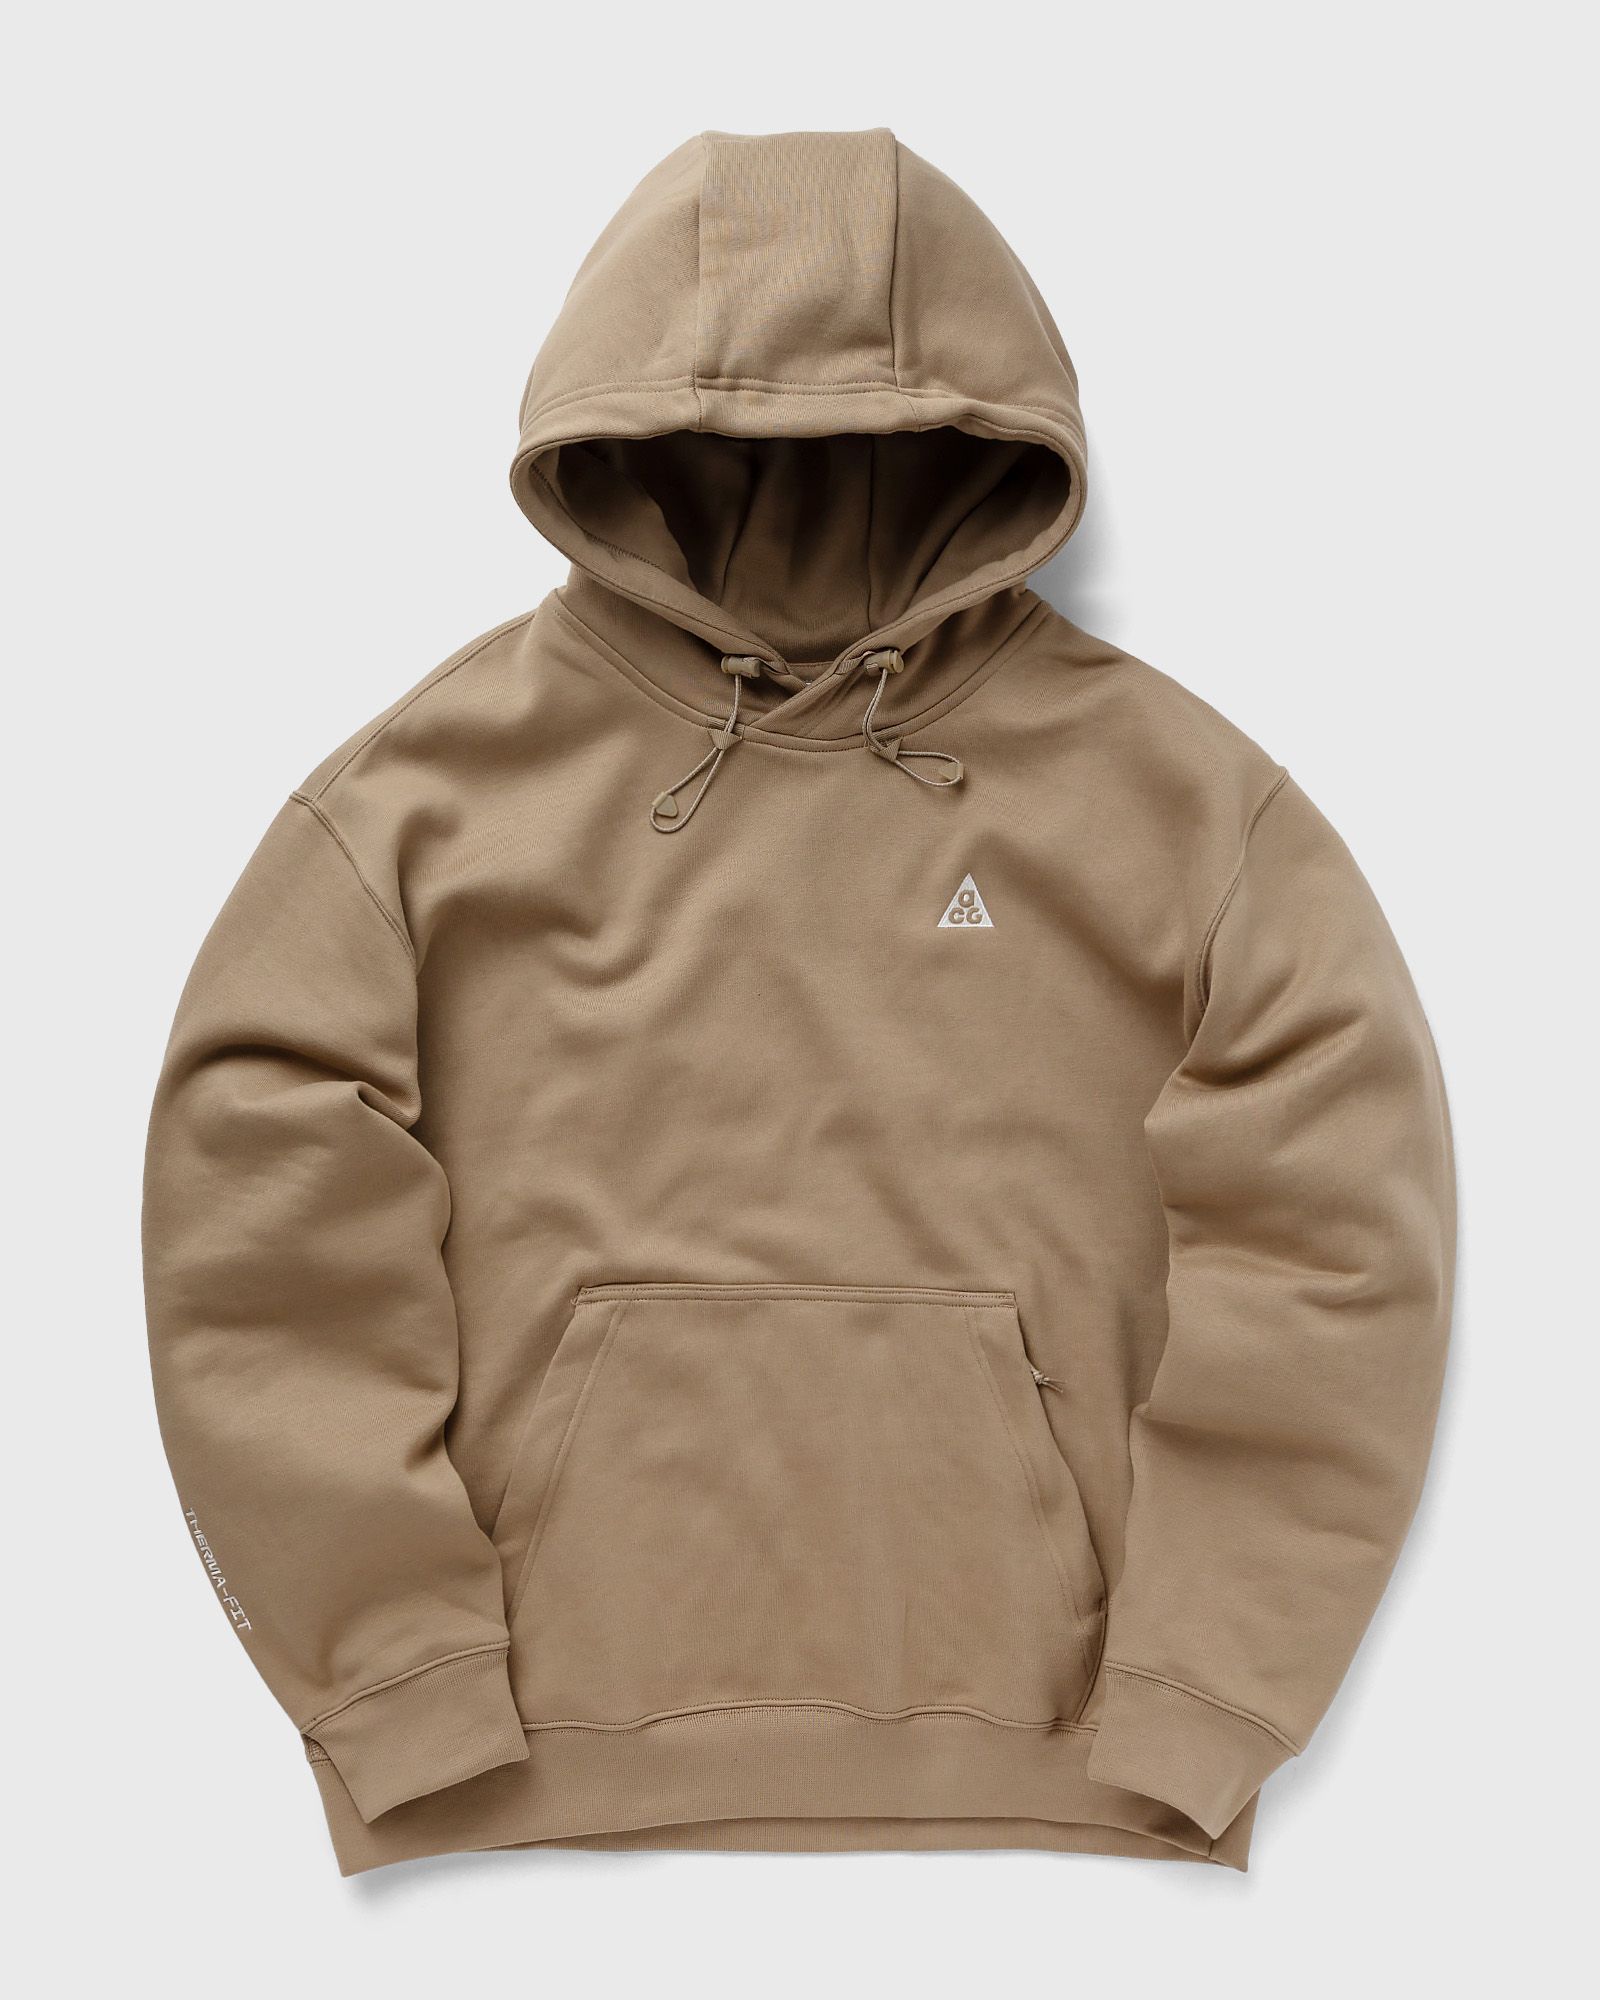 Nike - acg therma-fit fleece pullover hoodie men hoodies brown in größe:xl